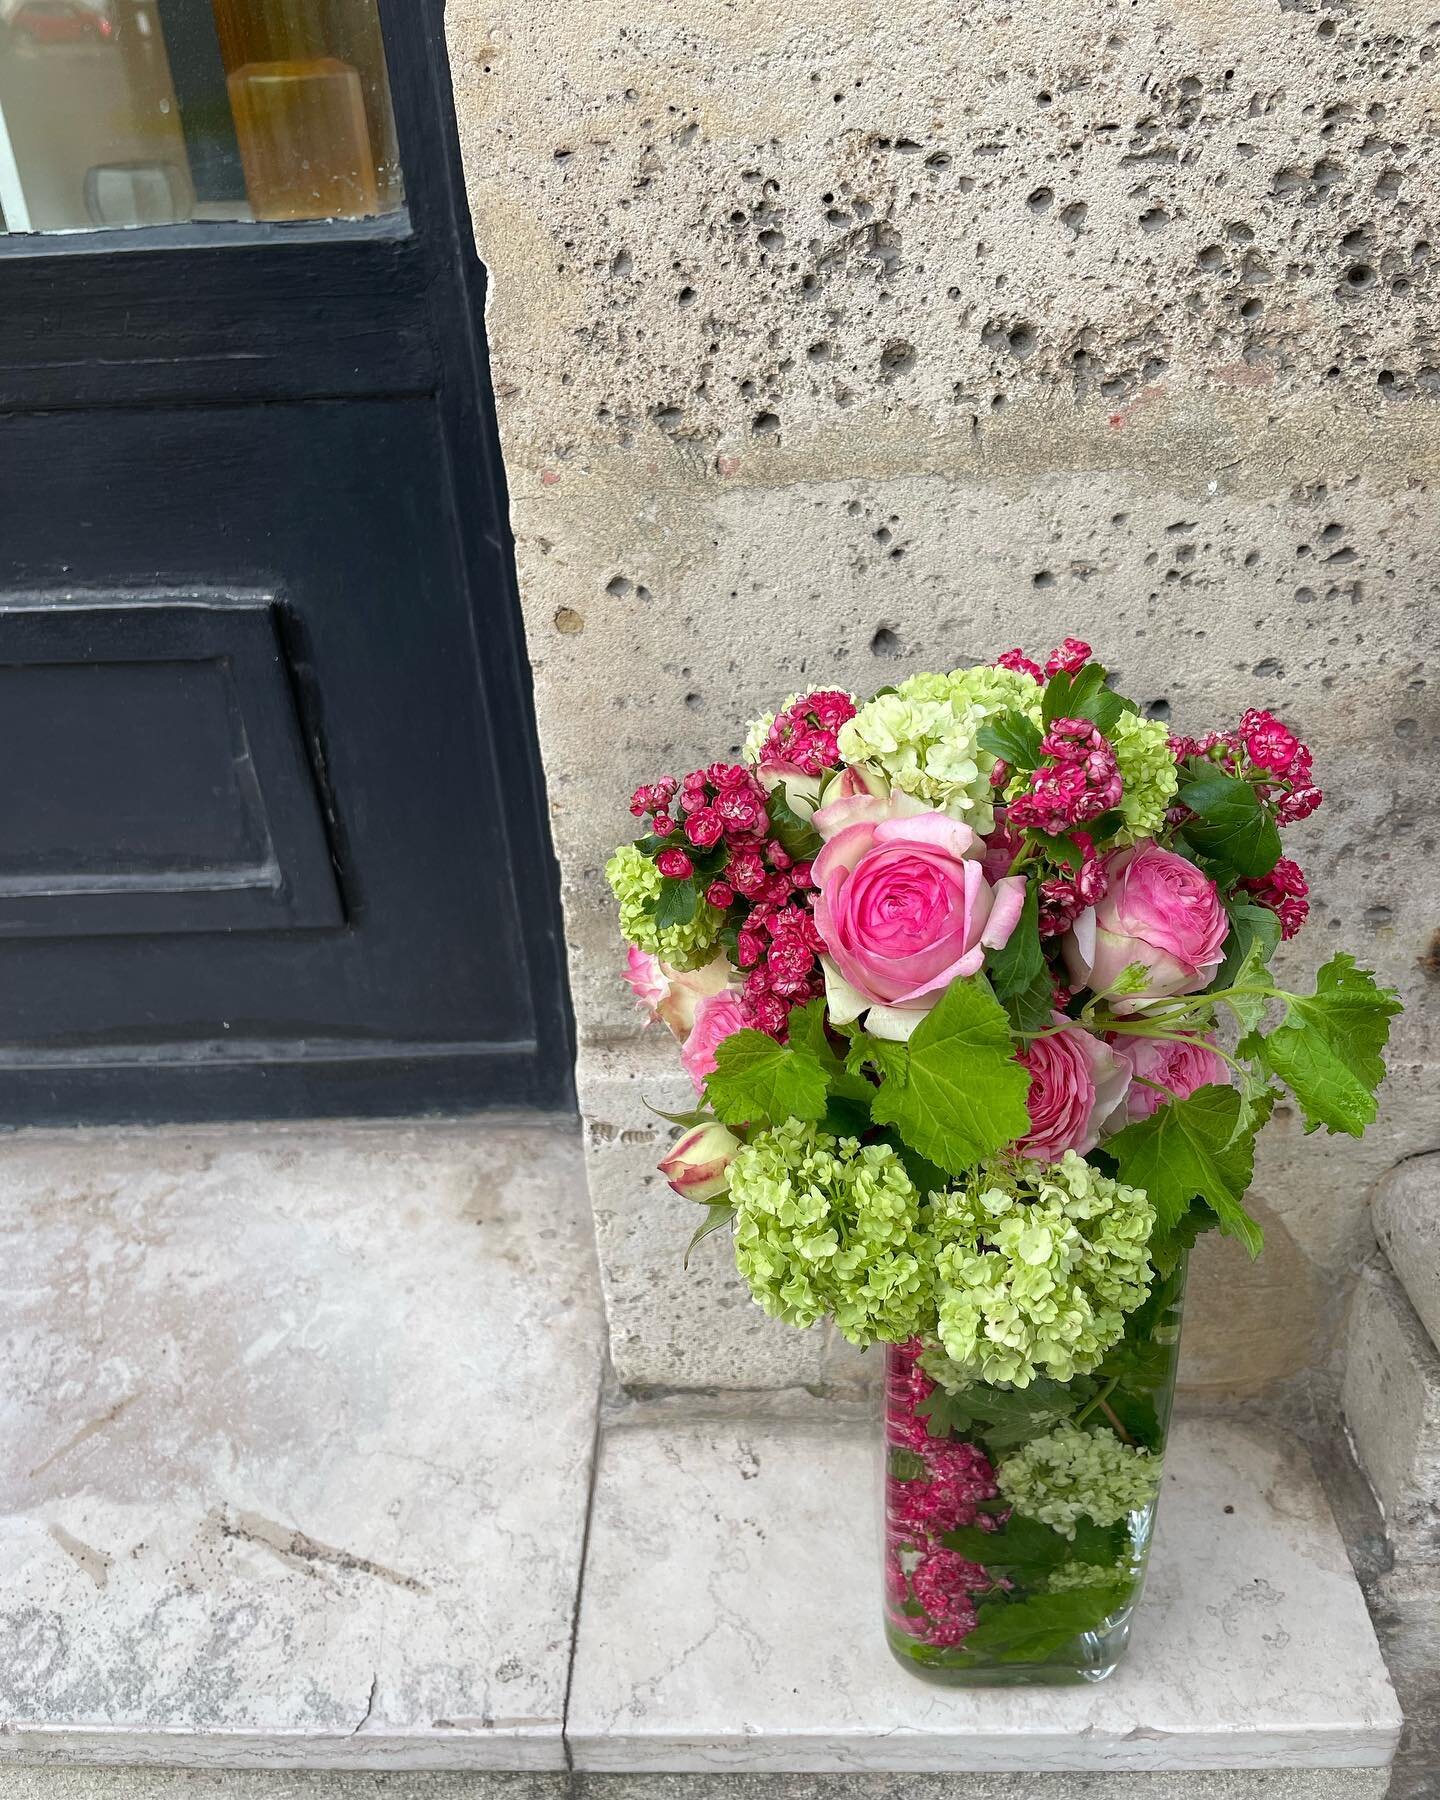 パリ花留学Day2🇫🇷

昨日は初めての念願の由美さんレッスンでした😌✨

Bouquet de mari&eacute;e とcomposition 

レッスンを受けている時、花とこんなにも向き合って作ったことがなかった私は１つ１つの植物に向き合って作り、その出来上がっていく姿に感動が止まらなかった

全て初めて。またゼロからスタートです🌱

#bouquetdemari&eacute;e #conposition #paris#florist #flowerlesson 
#パリ花